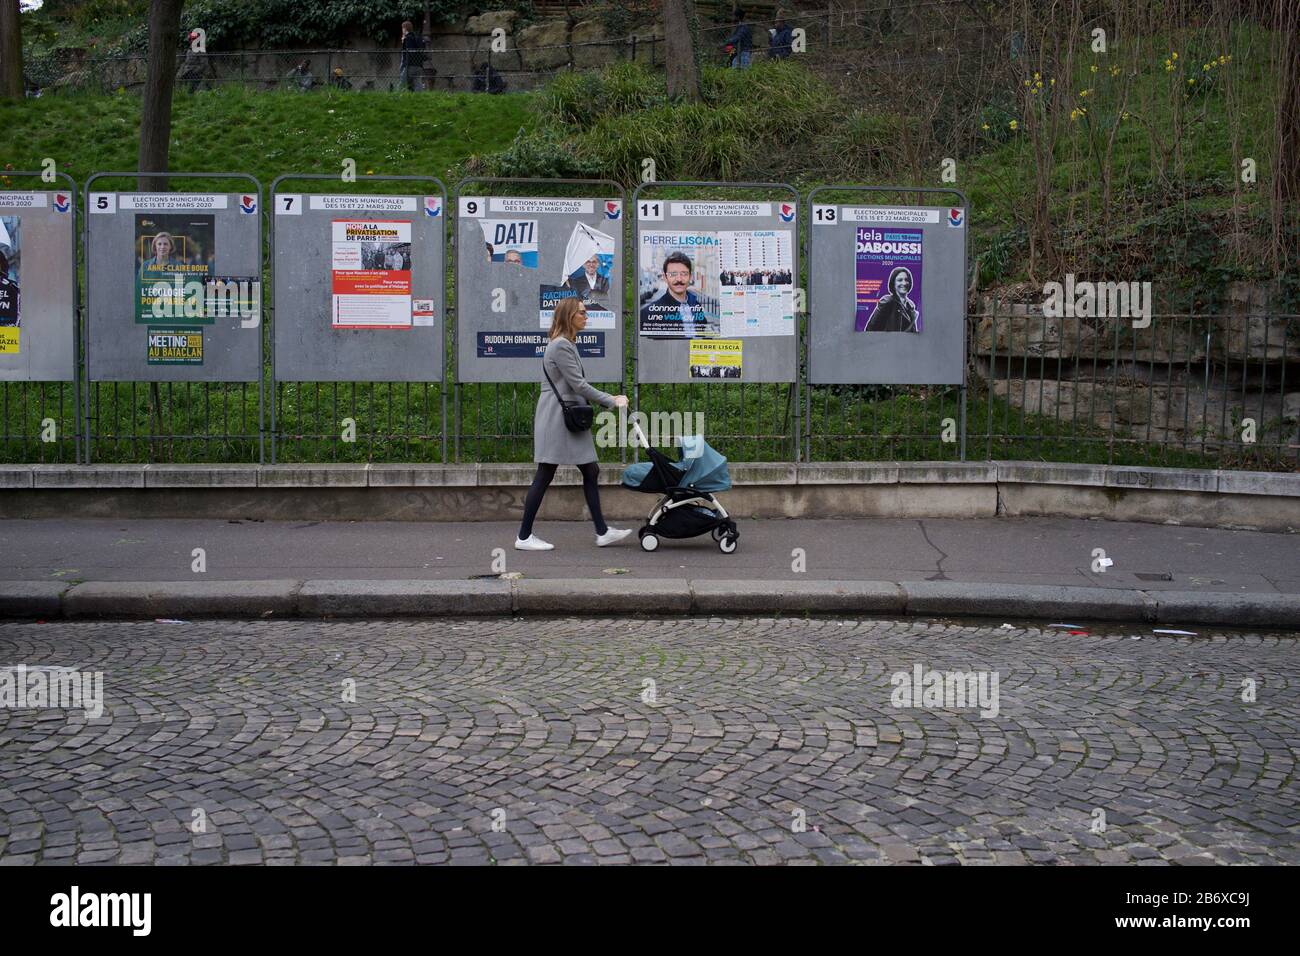 Une femme avec des promenades de param a passé des panels montrant des candidats électoraux aux élections municipales françaises, rue Ronsard, Montmartre, 75018 Paris, France, mars 2020 Banque D'Images